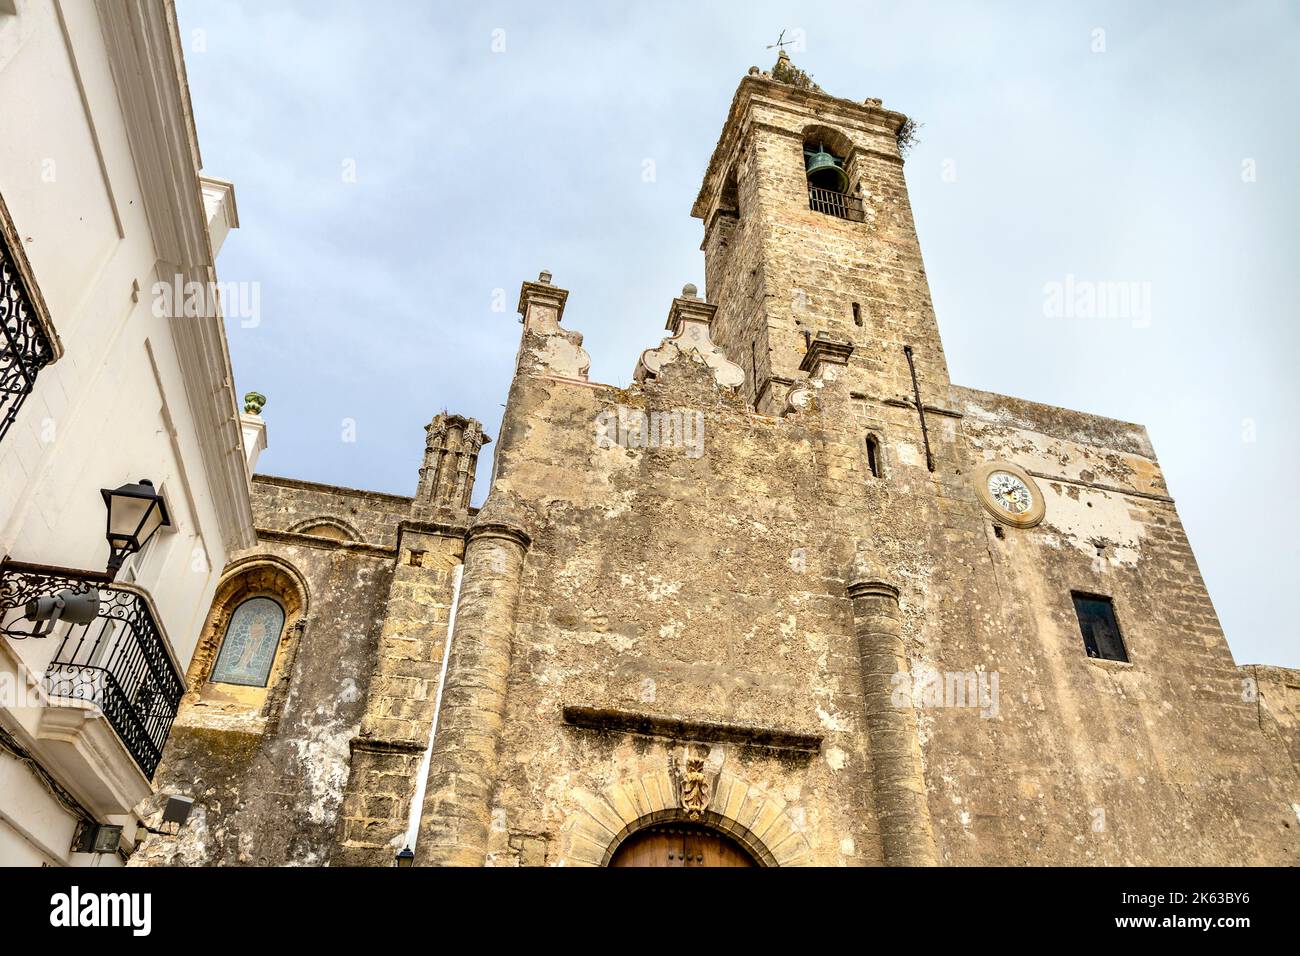 Extérieur de l'église de Divino Salvador, mélange de Mudéjar du 14th siècle et de style gothique du 16th siècle, Vejer de la Frontera, Andalousie, Espagne Banque D'Images